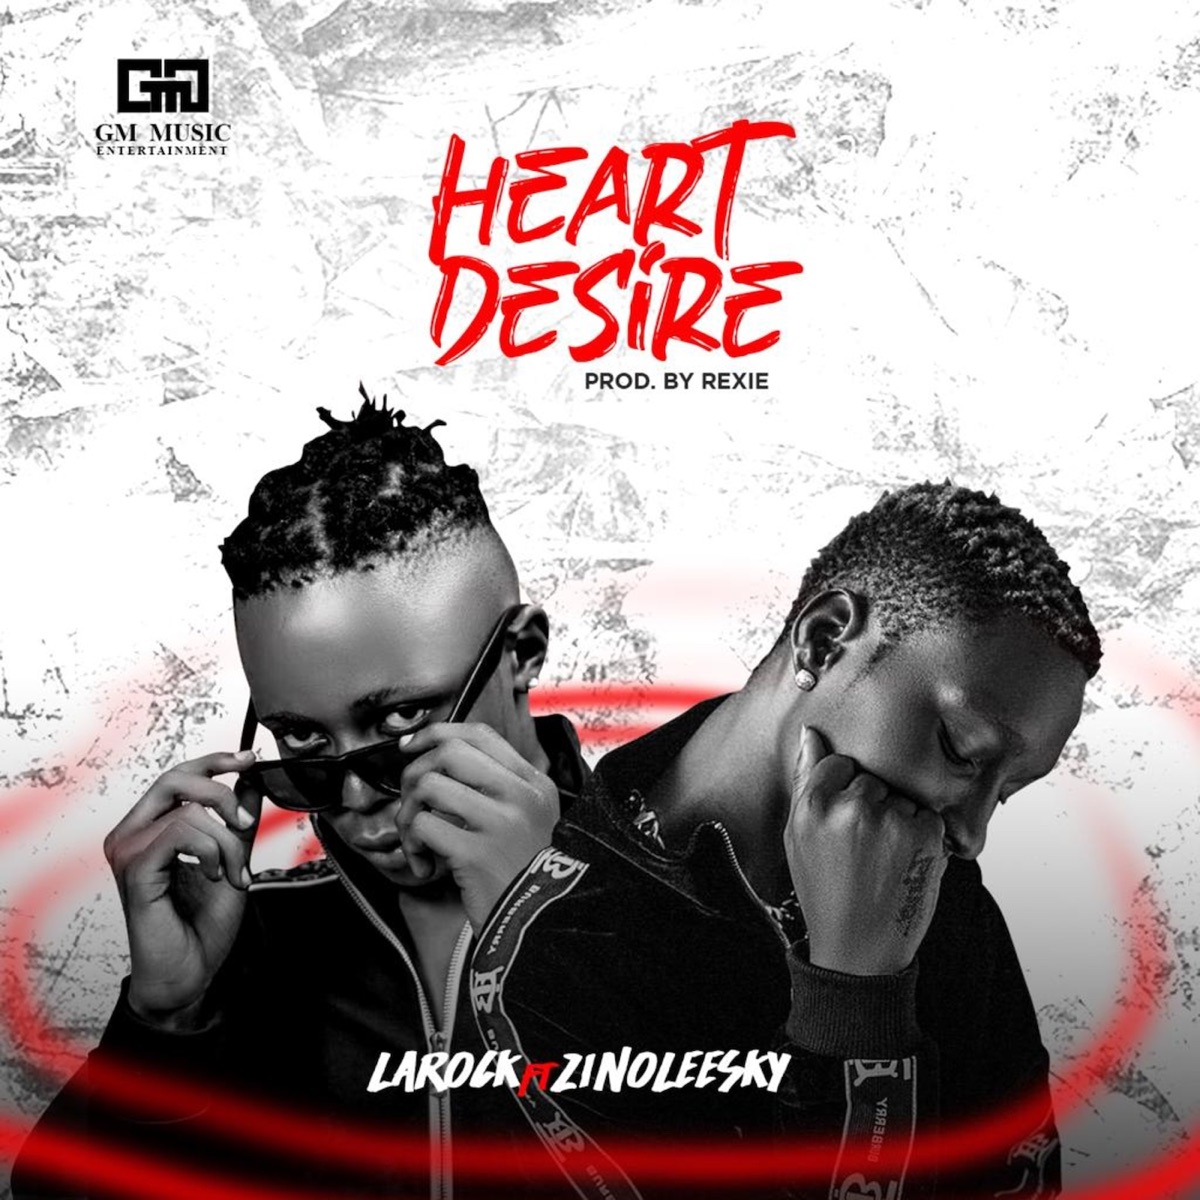 Heart Desire (feat. Zinoleesky) - Single by Larock on Apple Music